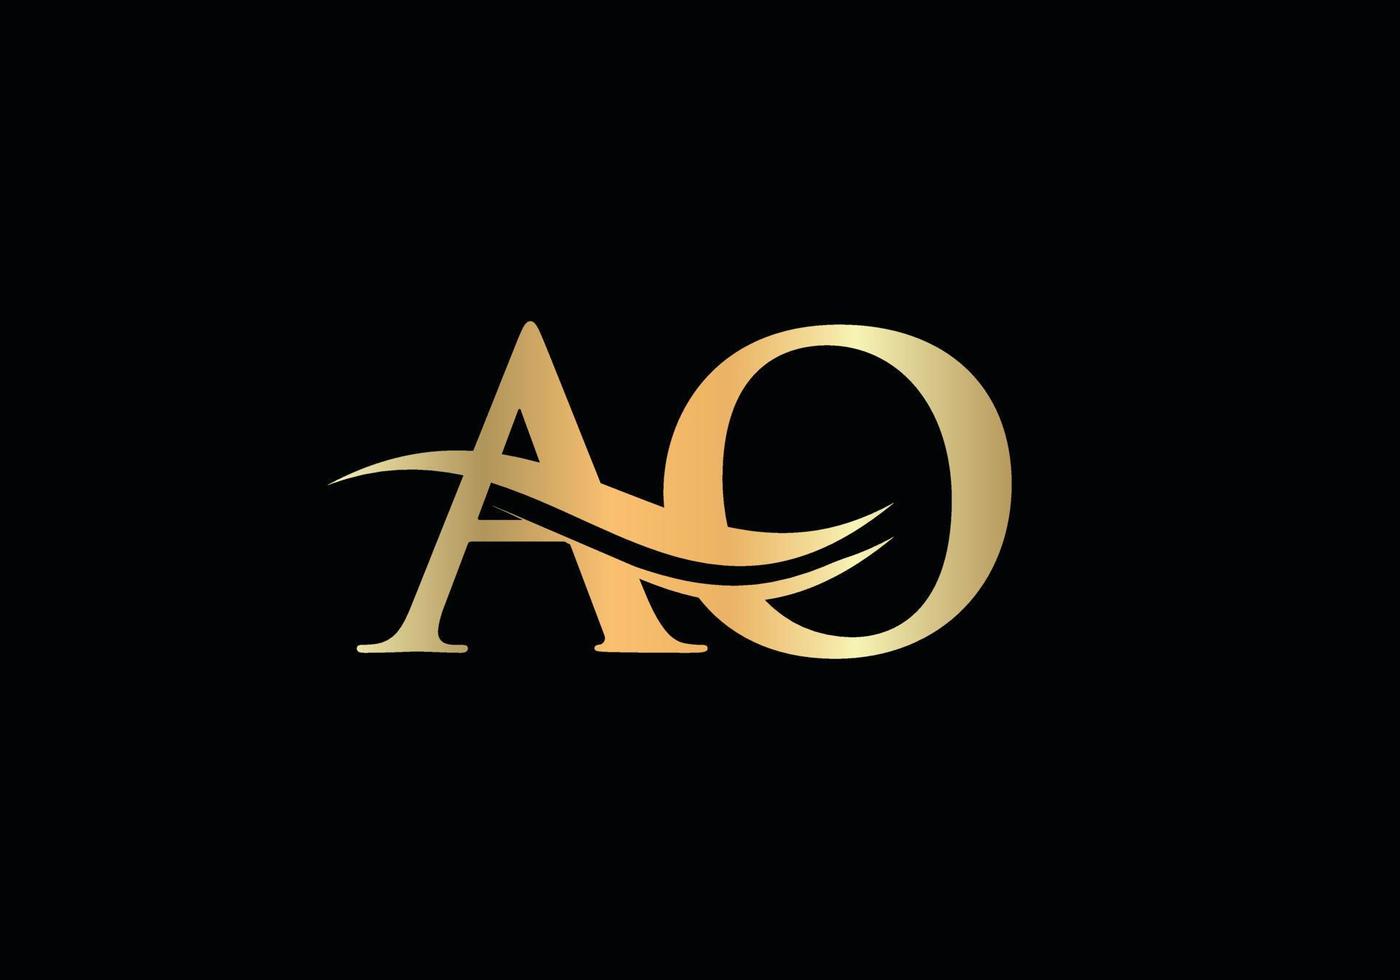 Swoosh-Buchstabe ao Logo-Design für Geschäfts- und Firmenidentität. Wasserwellen-AO-Logo mit modernem Trend vektor